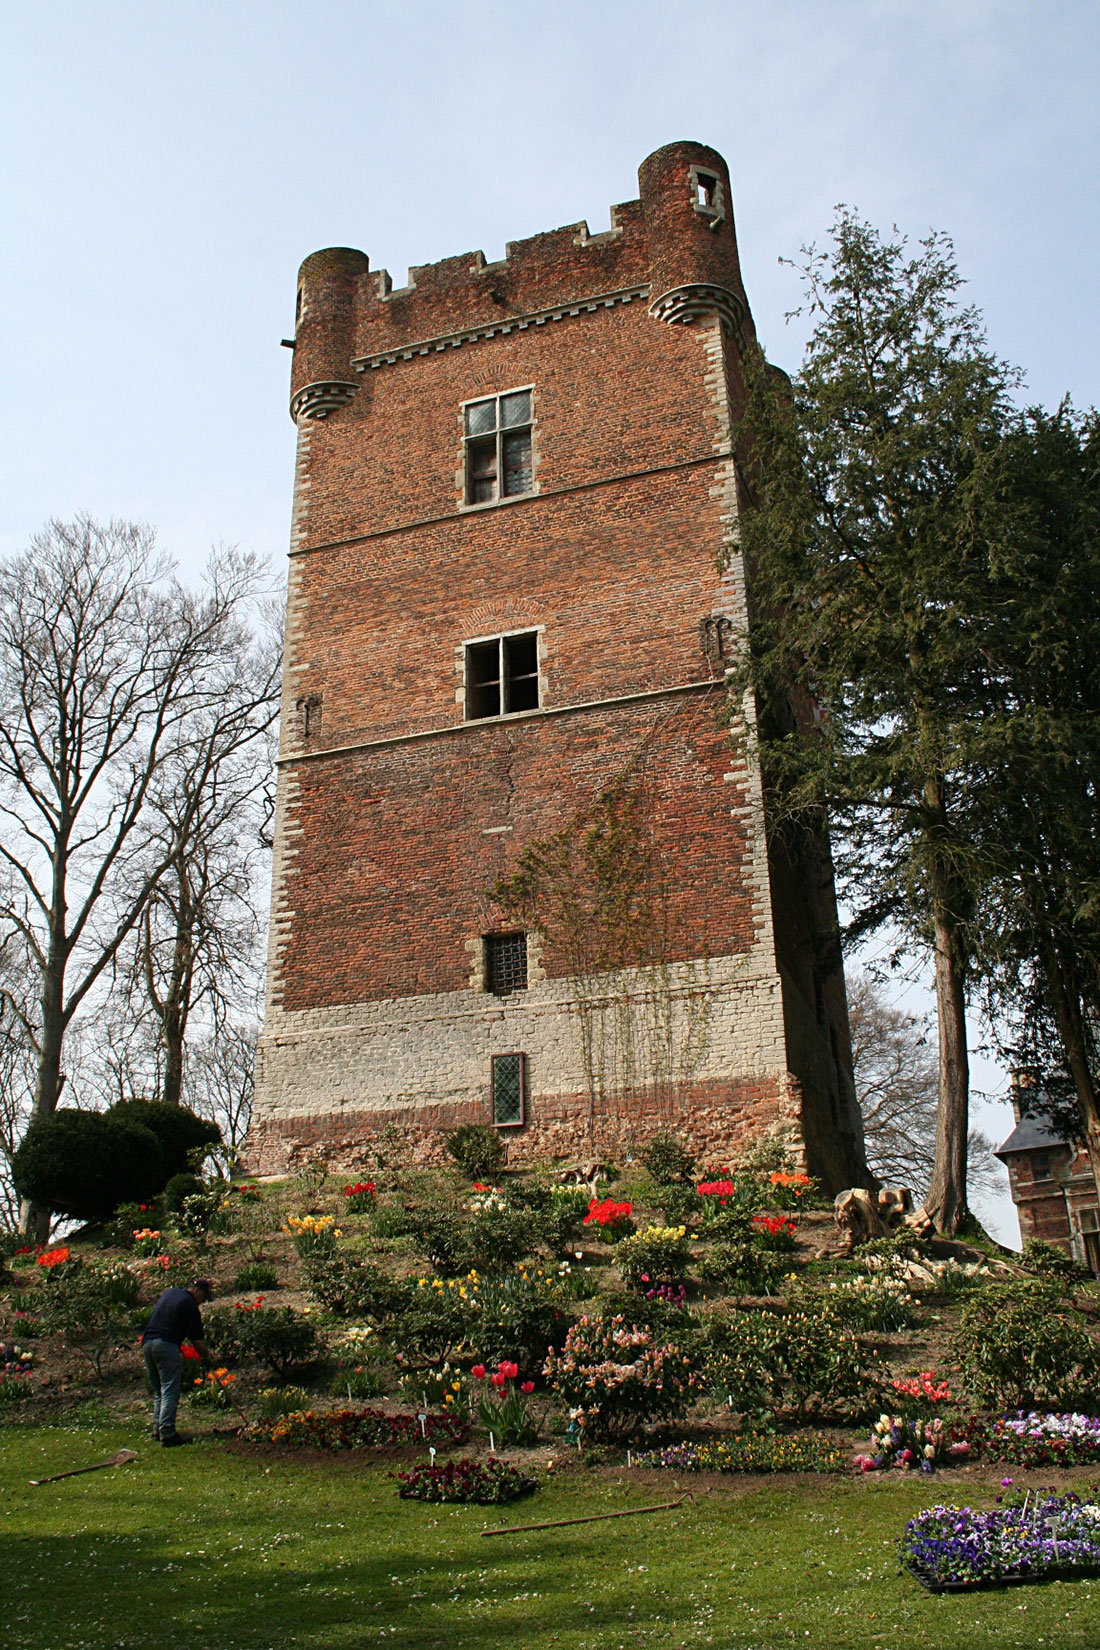 Donjon at Groot Bijgaarden Castle